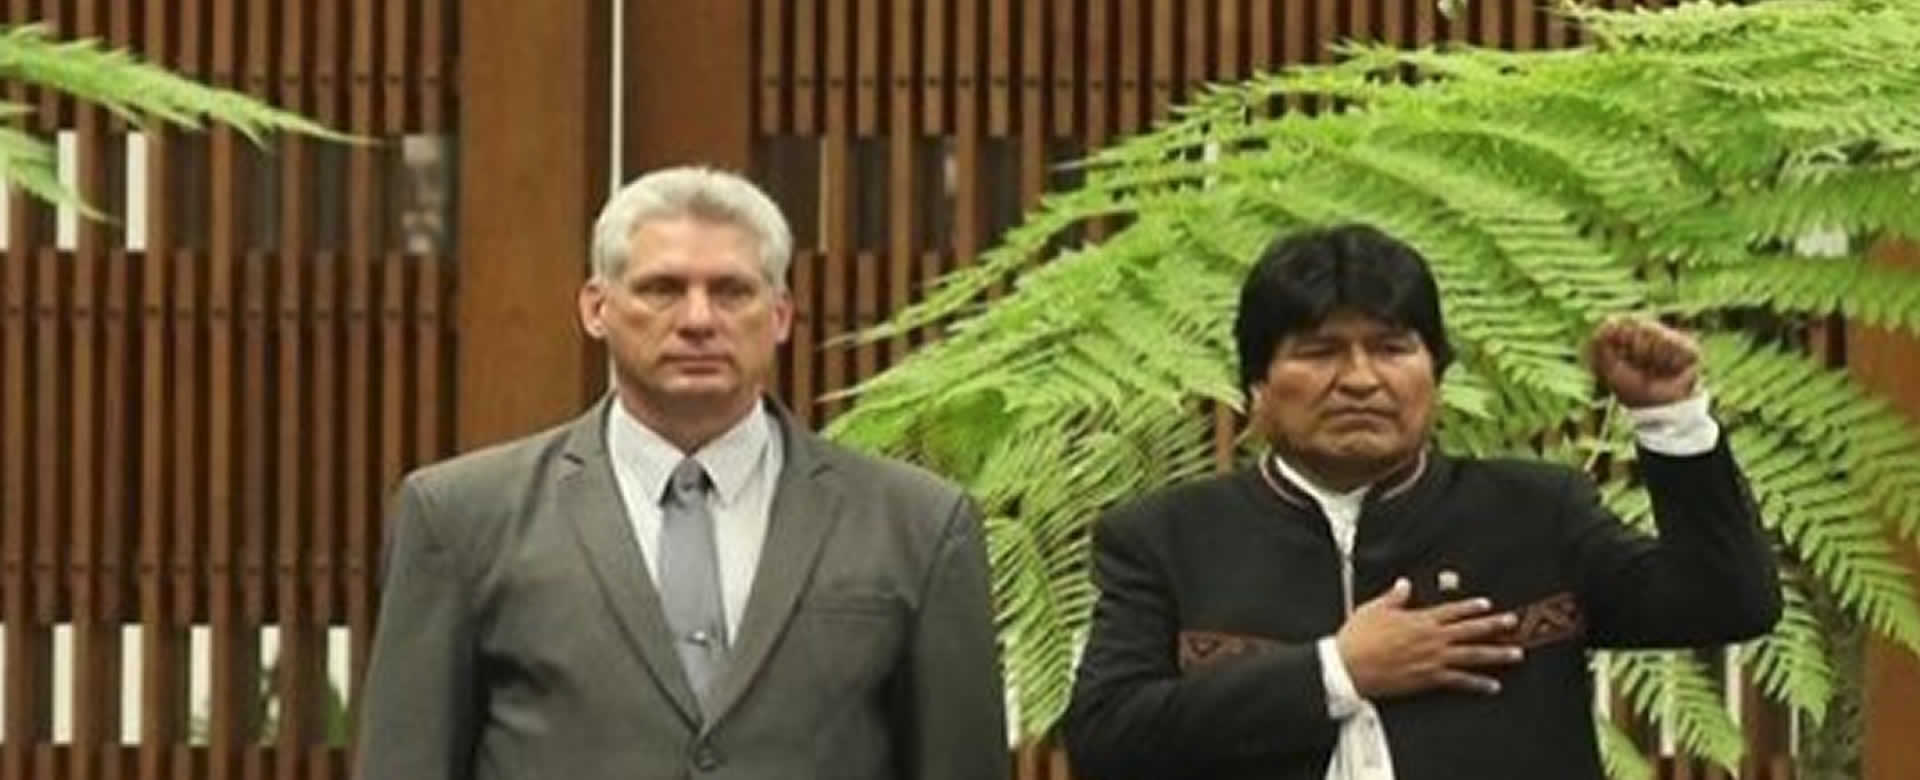 Presidentes Diaz-Canel y Evo Morales denuncian injerencia contra el pueblo venezolano